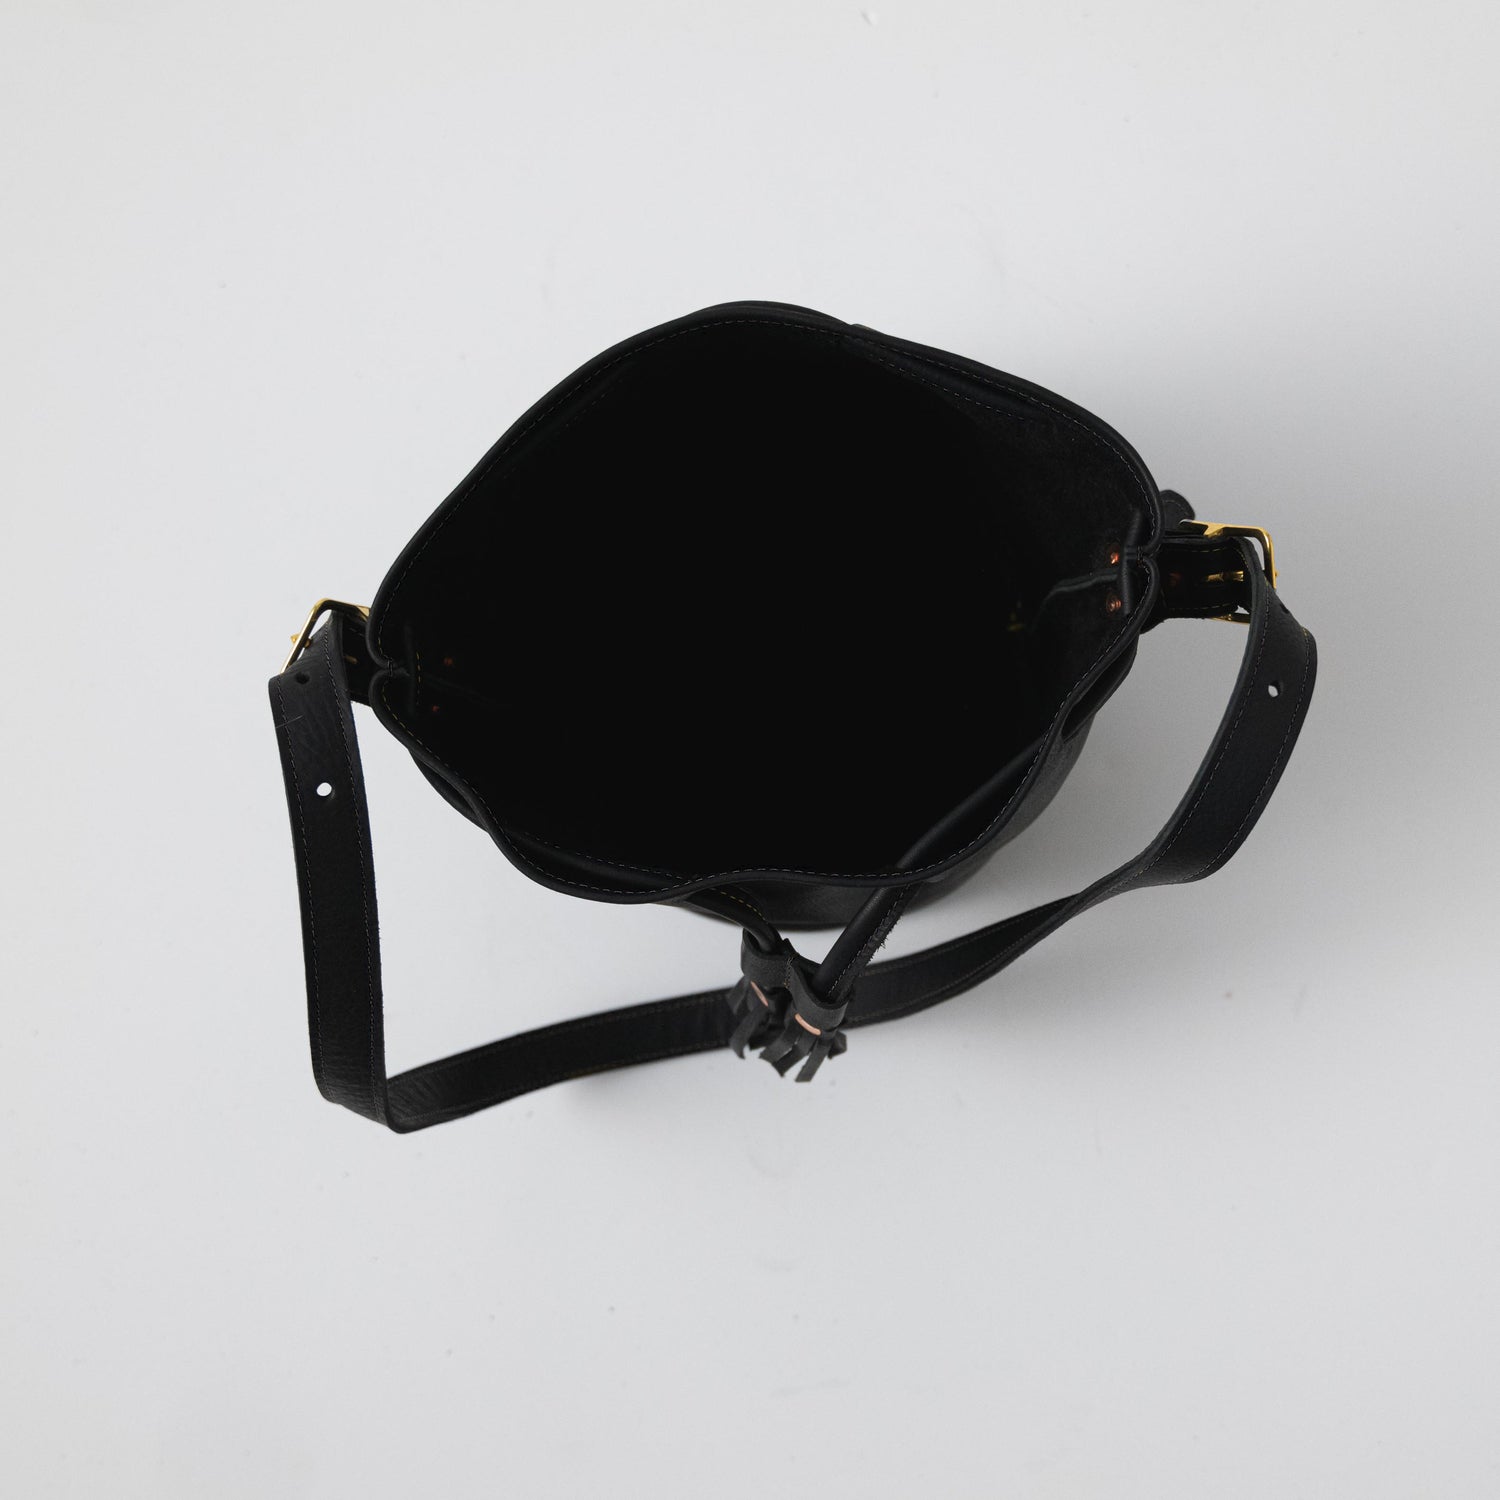 Black Kodiak Bucket Bag